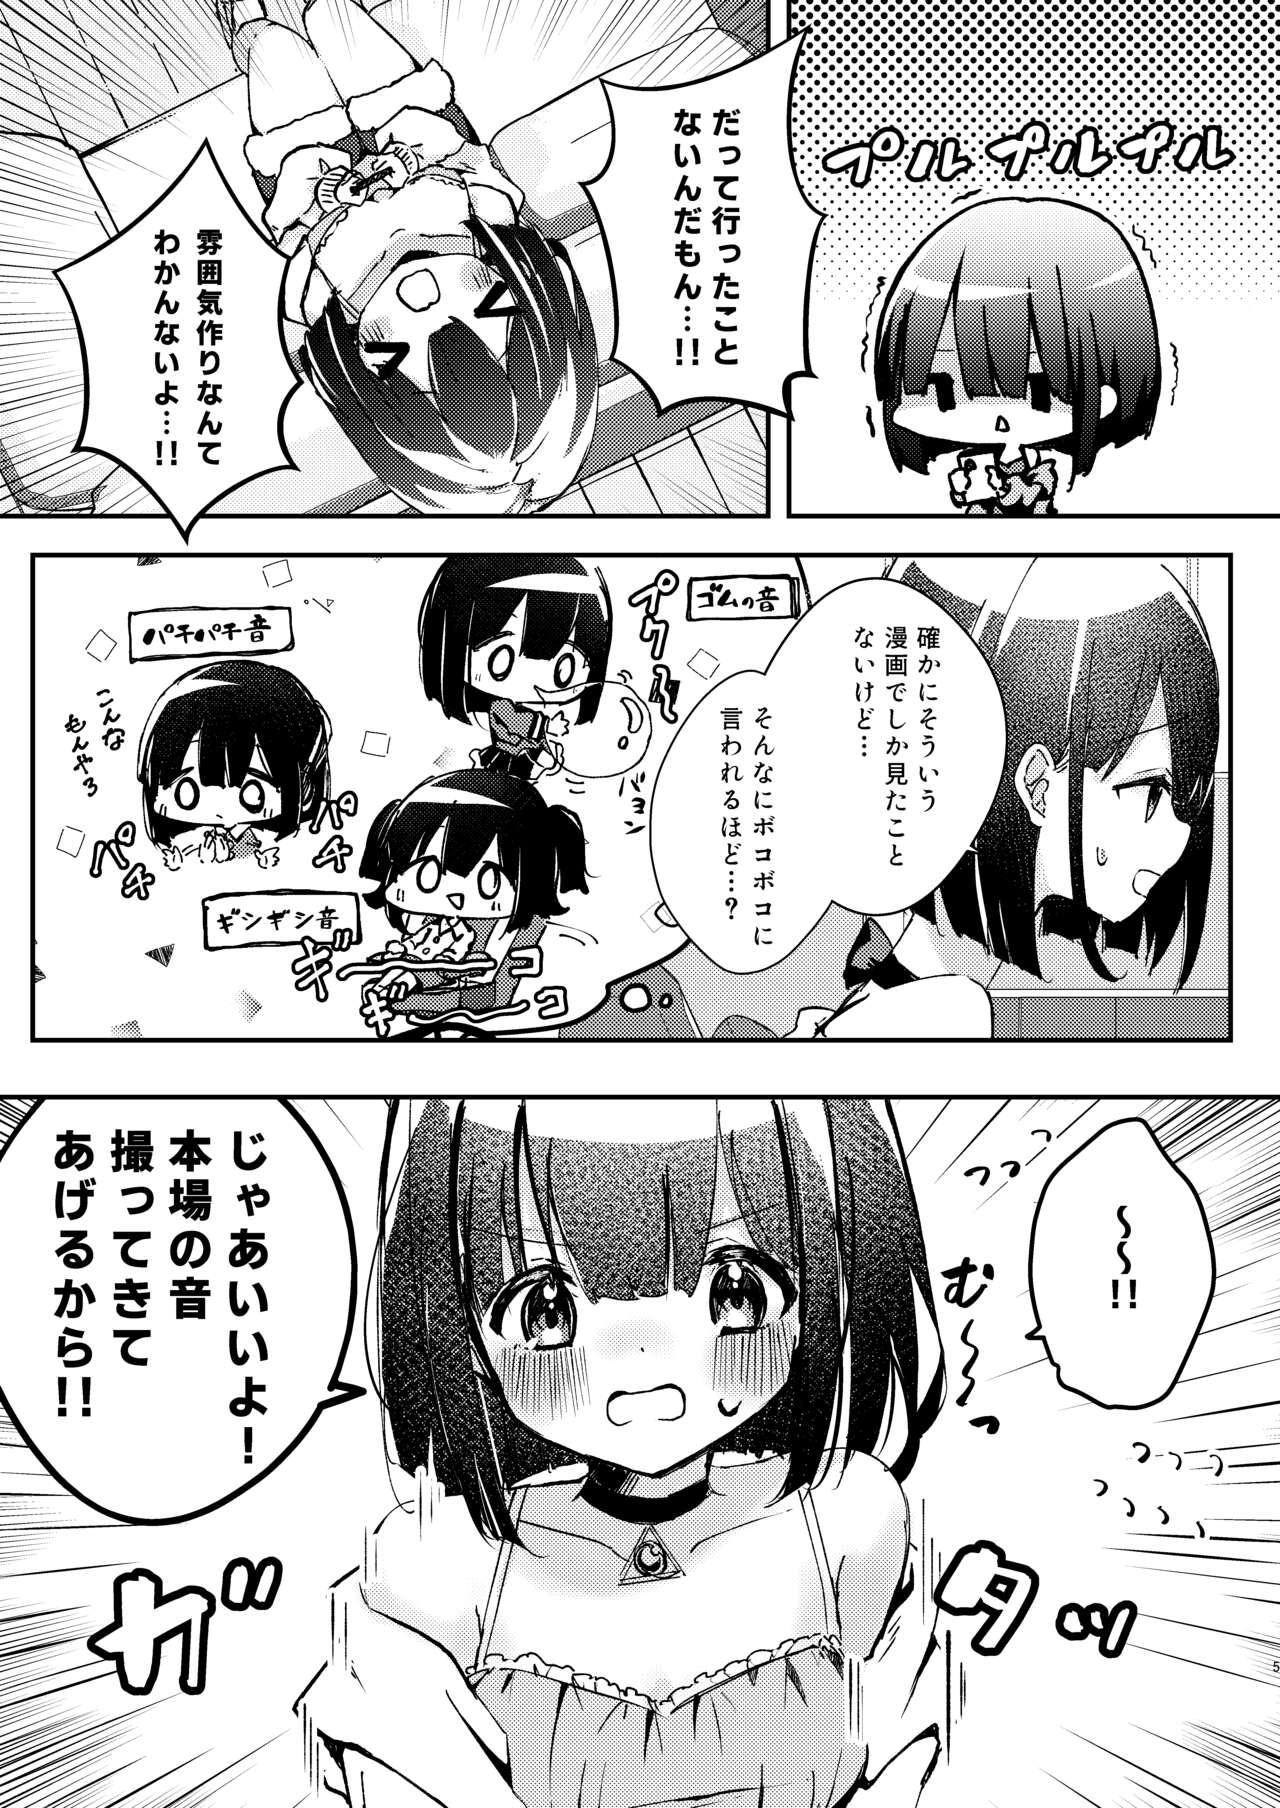 Piss ASMR Rokuon-chuu. - Original Hot Mom - Page 5